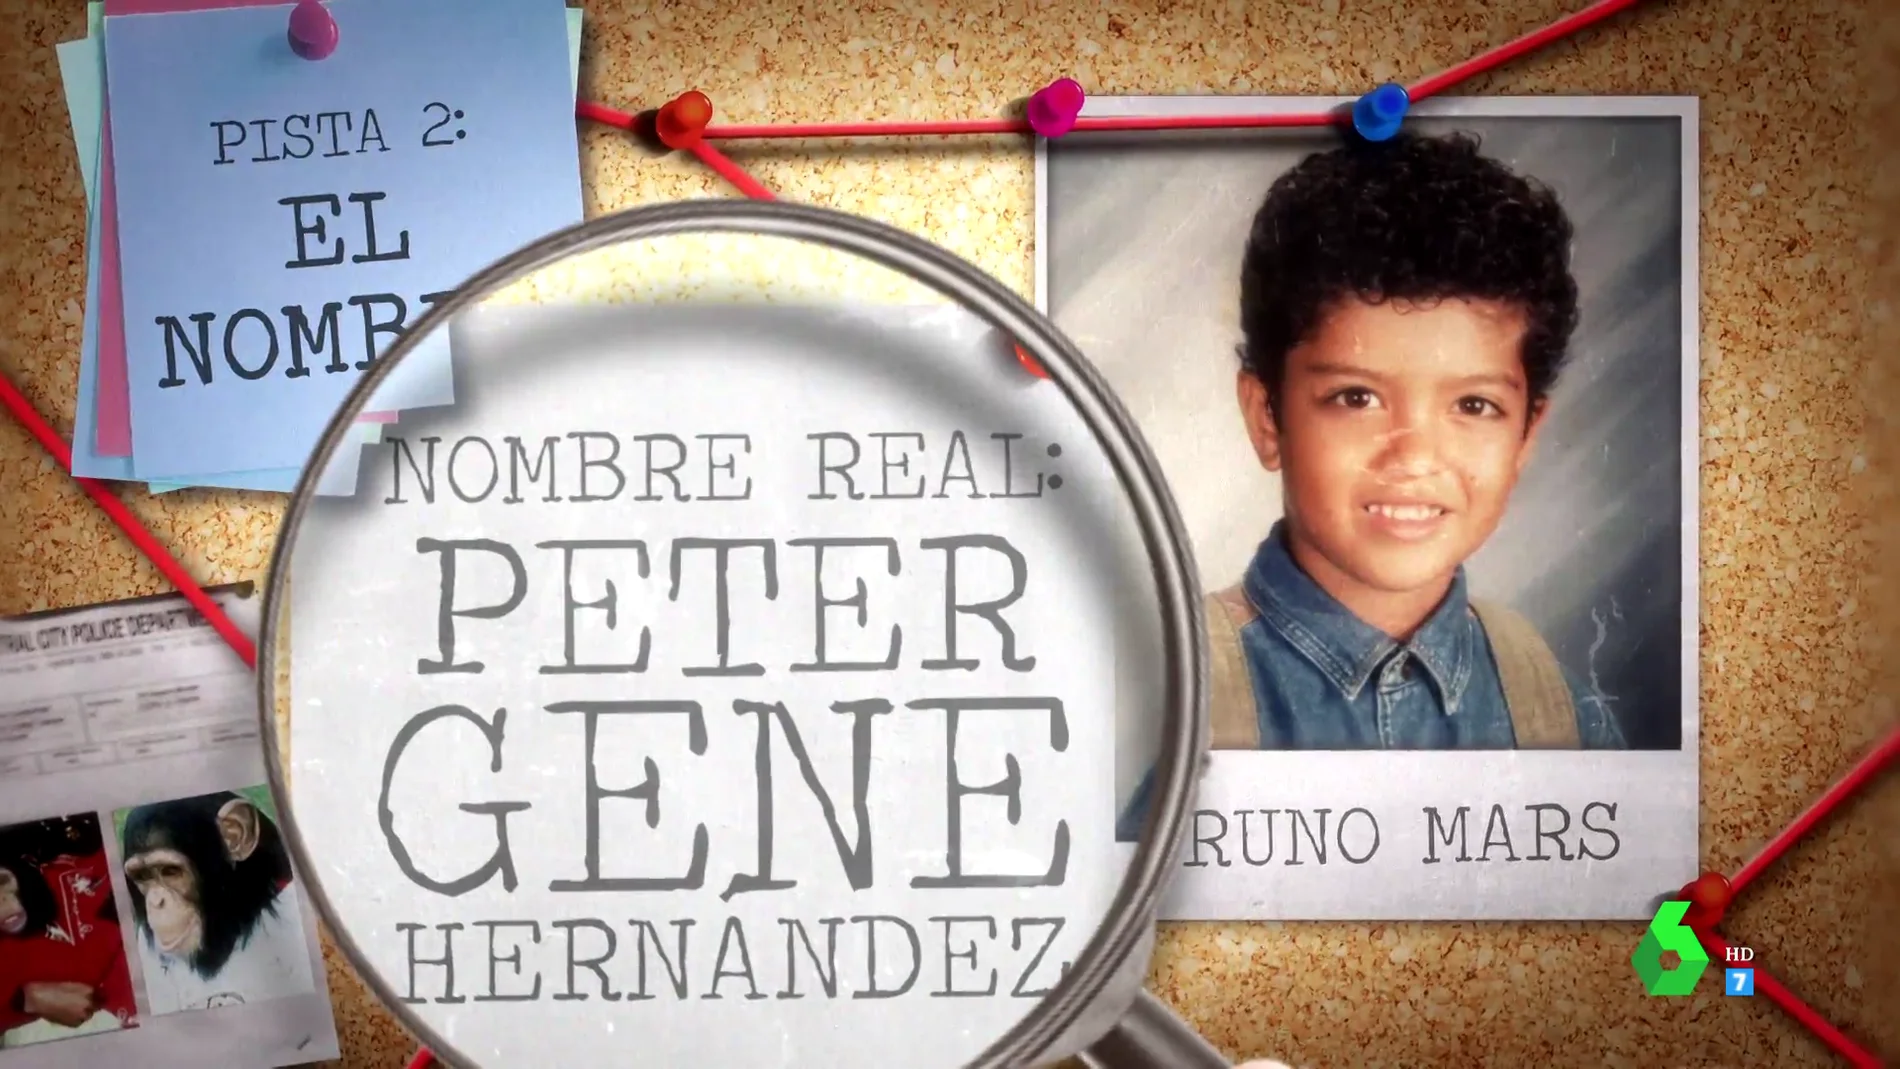 Las cuatro claves que evidencian que Bruno Mars podría ser el hijo de Michael Jackson